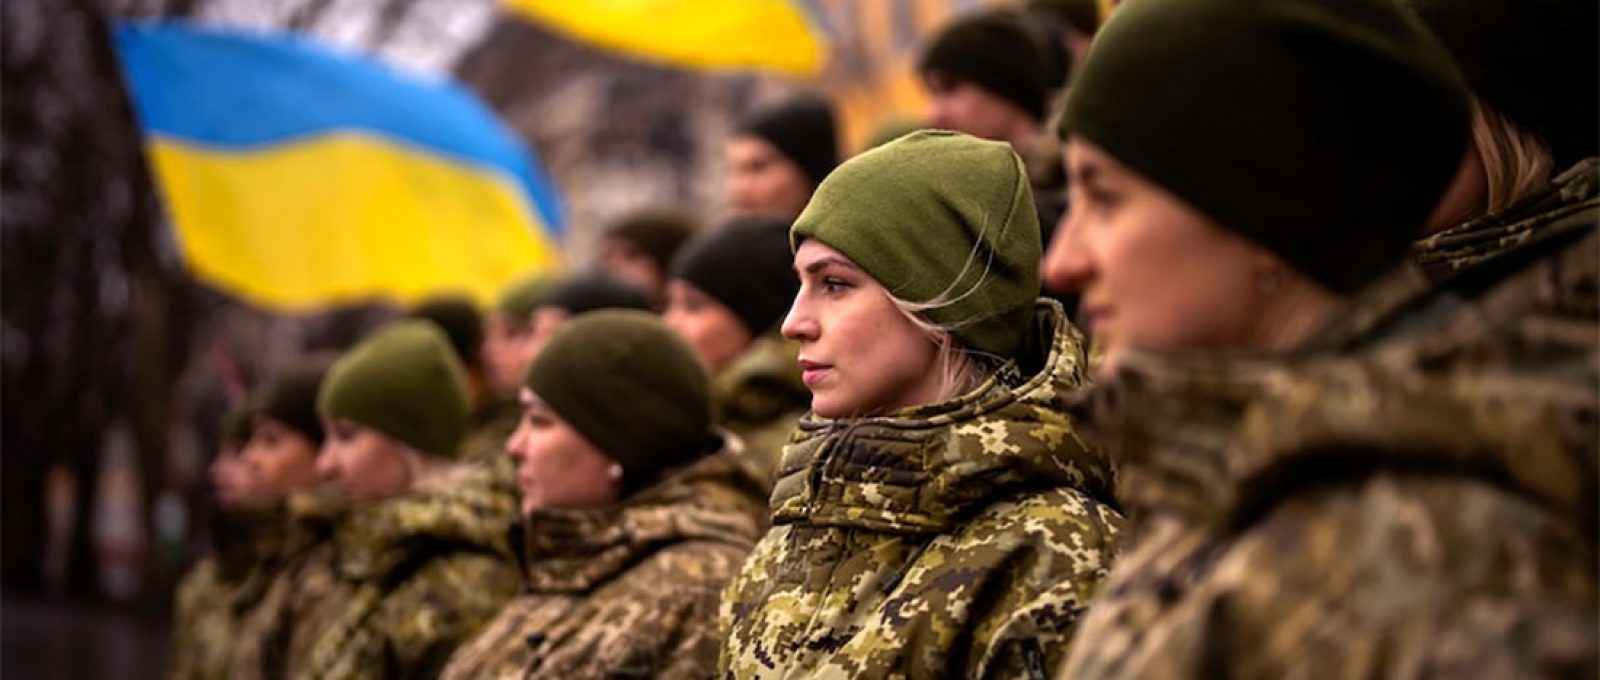 Militares ucranianos em cerimônia do Dia da Unidade em Odessa, Ucrânia, 16 de fevereiro de 2022 (Emilio Morenatti/AP).